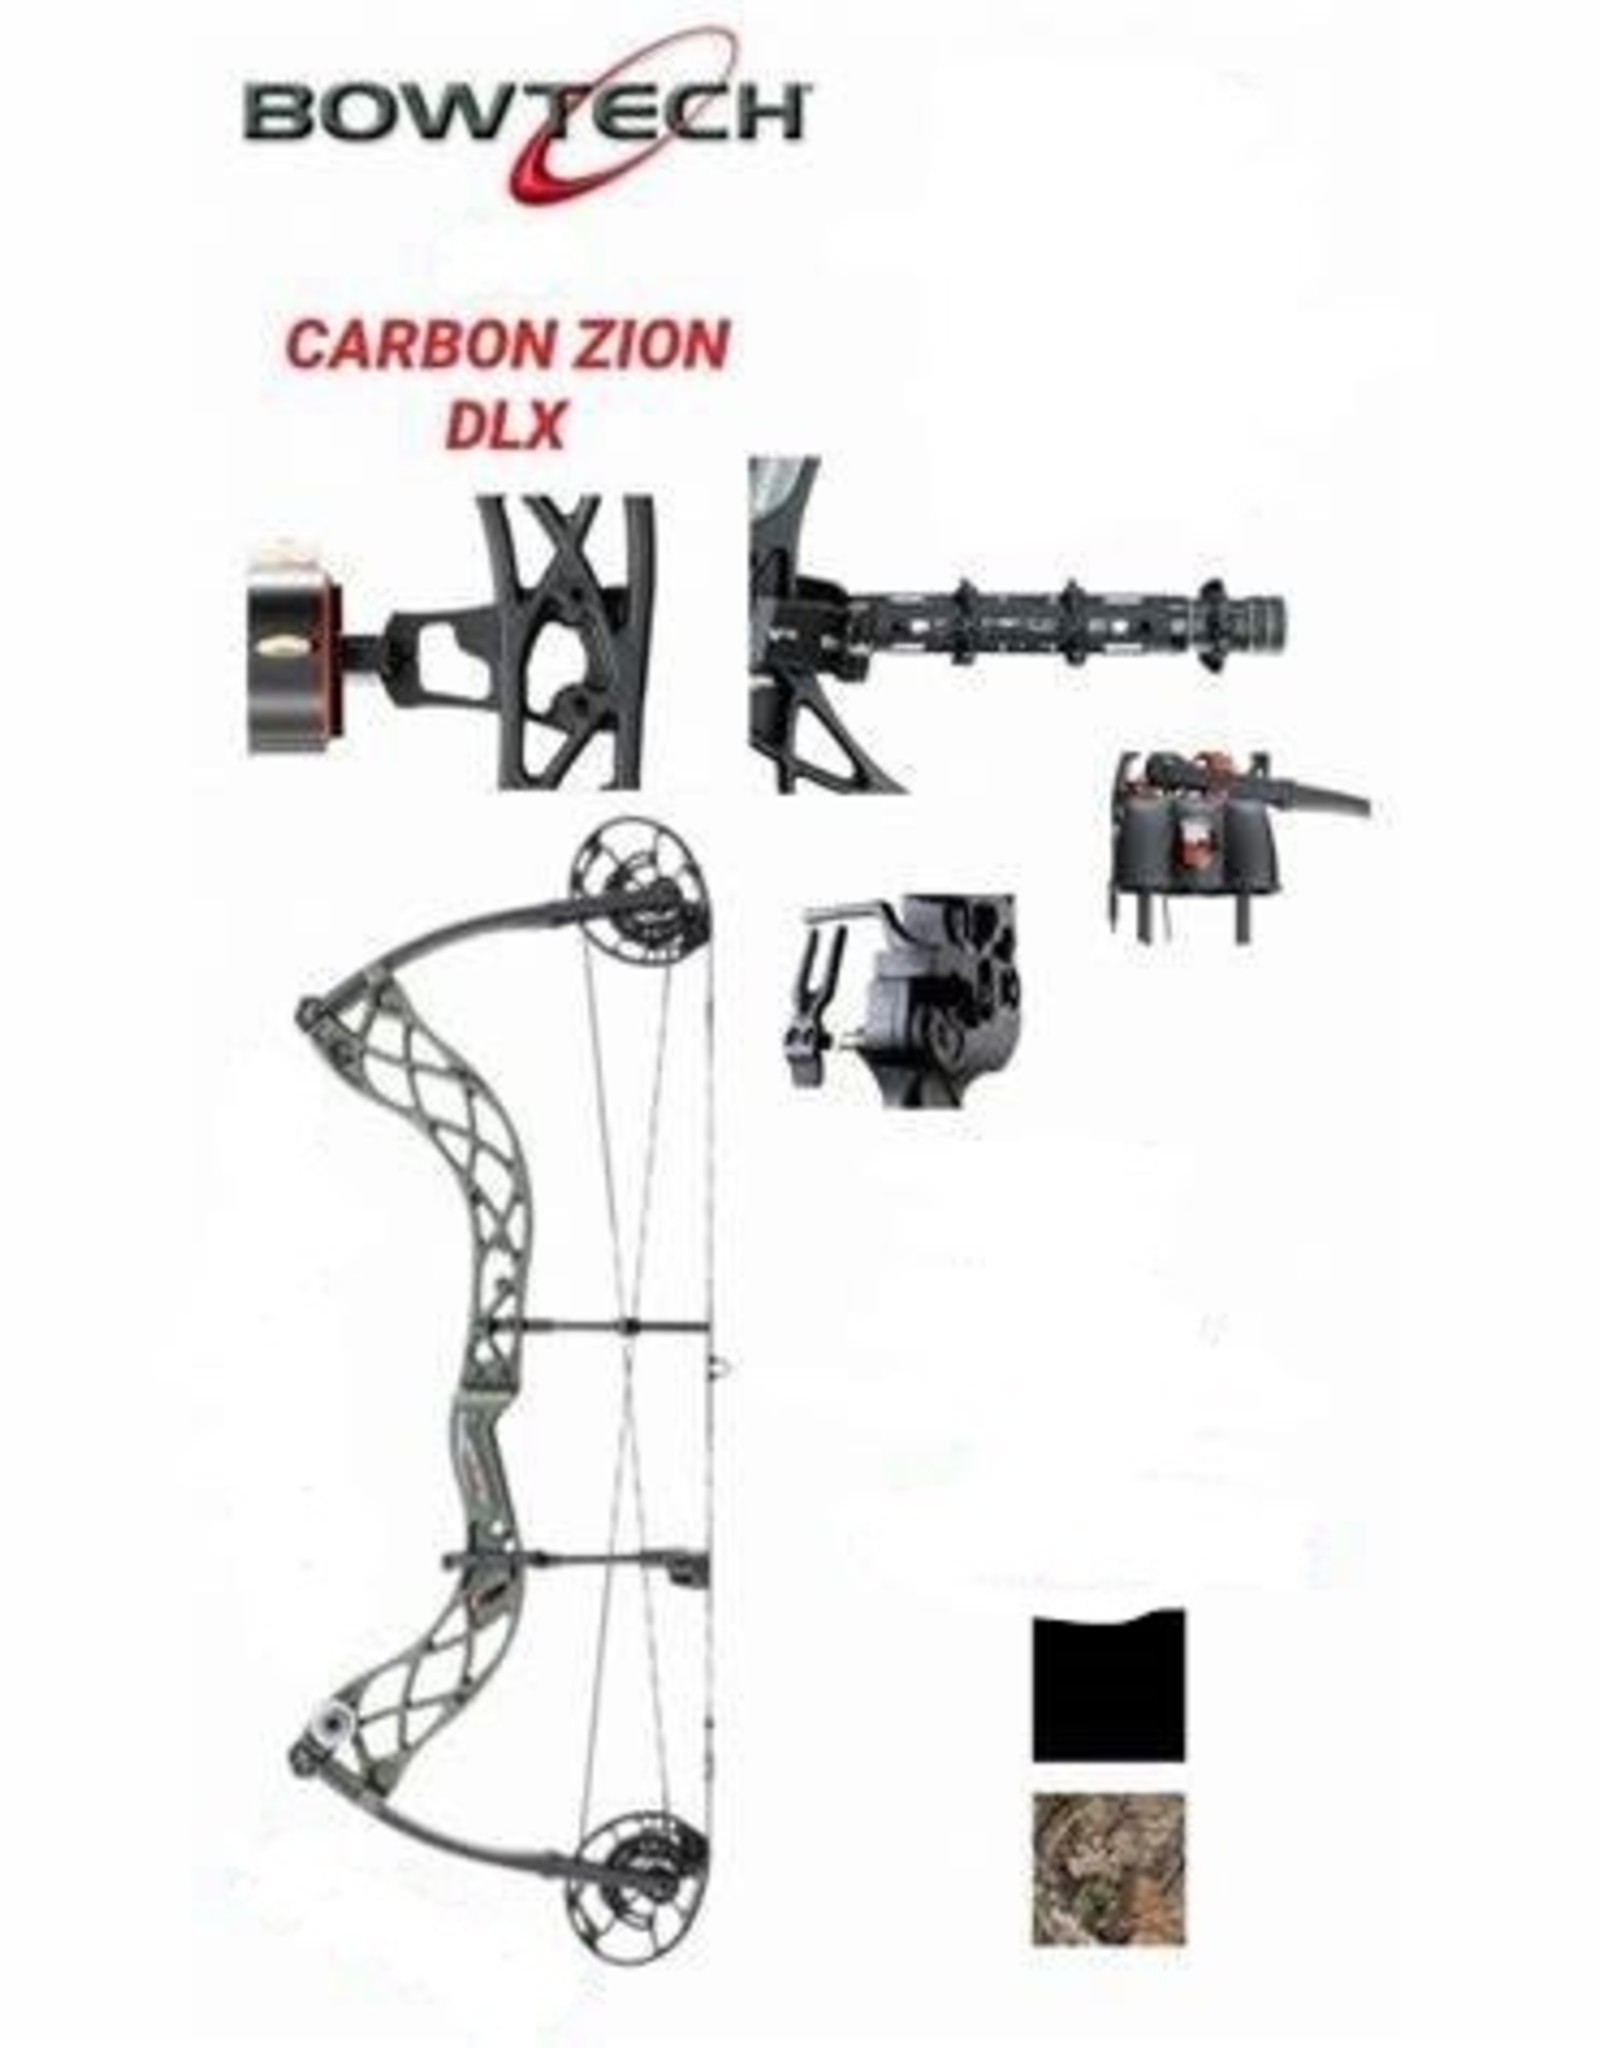 Bowtech Carbon Zion DLX